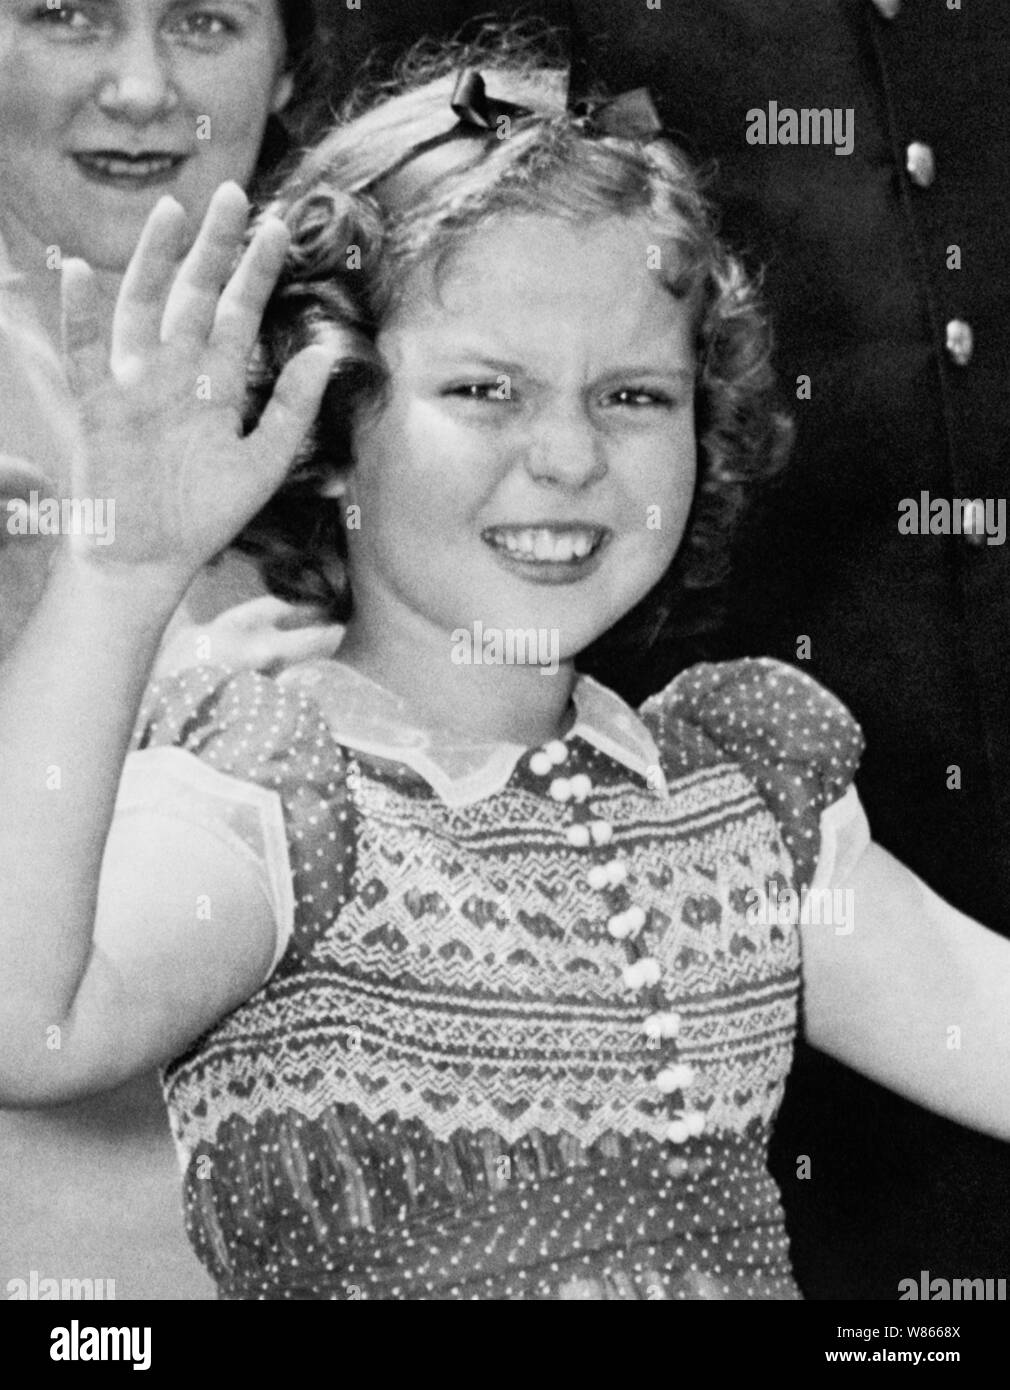 Vintage Foto der amerikanischen Kind Film star Shirley Temple (1928-2014). Das Bild wurde am 24. Juni 1938 gefangen, während die junge Schauspielerin zu den Zuschauern winkte, nachdem Sie das Weiße Haus links nach einem Treffen mit US-Präsident Franklin D Roosevelt. Während Ihrer Konversation Sie erklärte der Präsident, wie sie verloren hatte einen Zahn in der Nacht vor, wenn es fiel aus, als sie ein Sandwich gegessen. Stockfoto